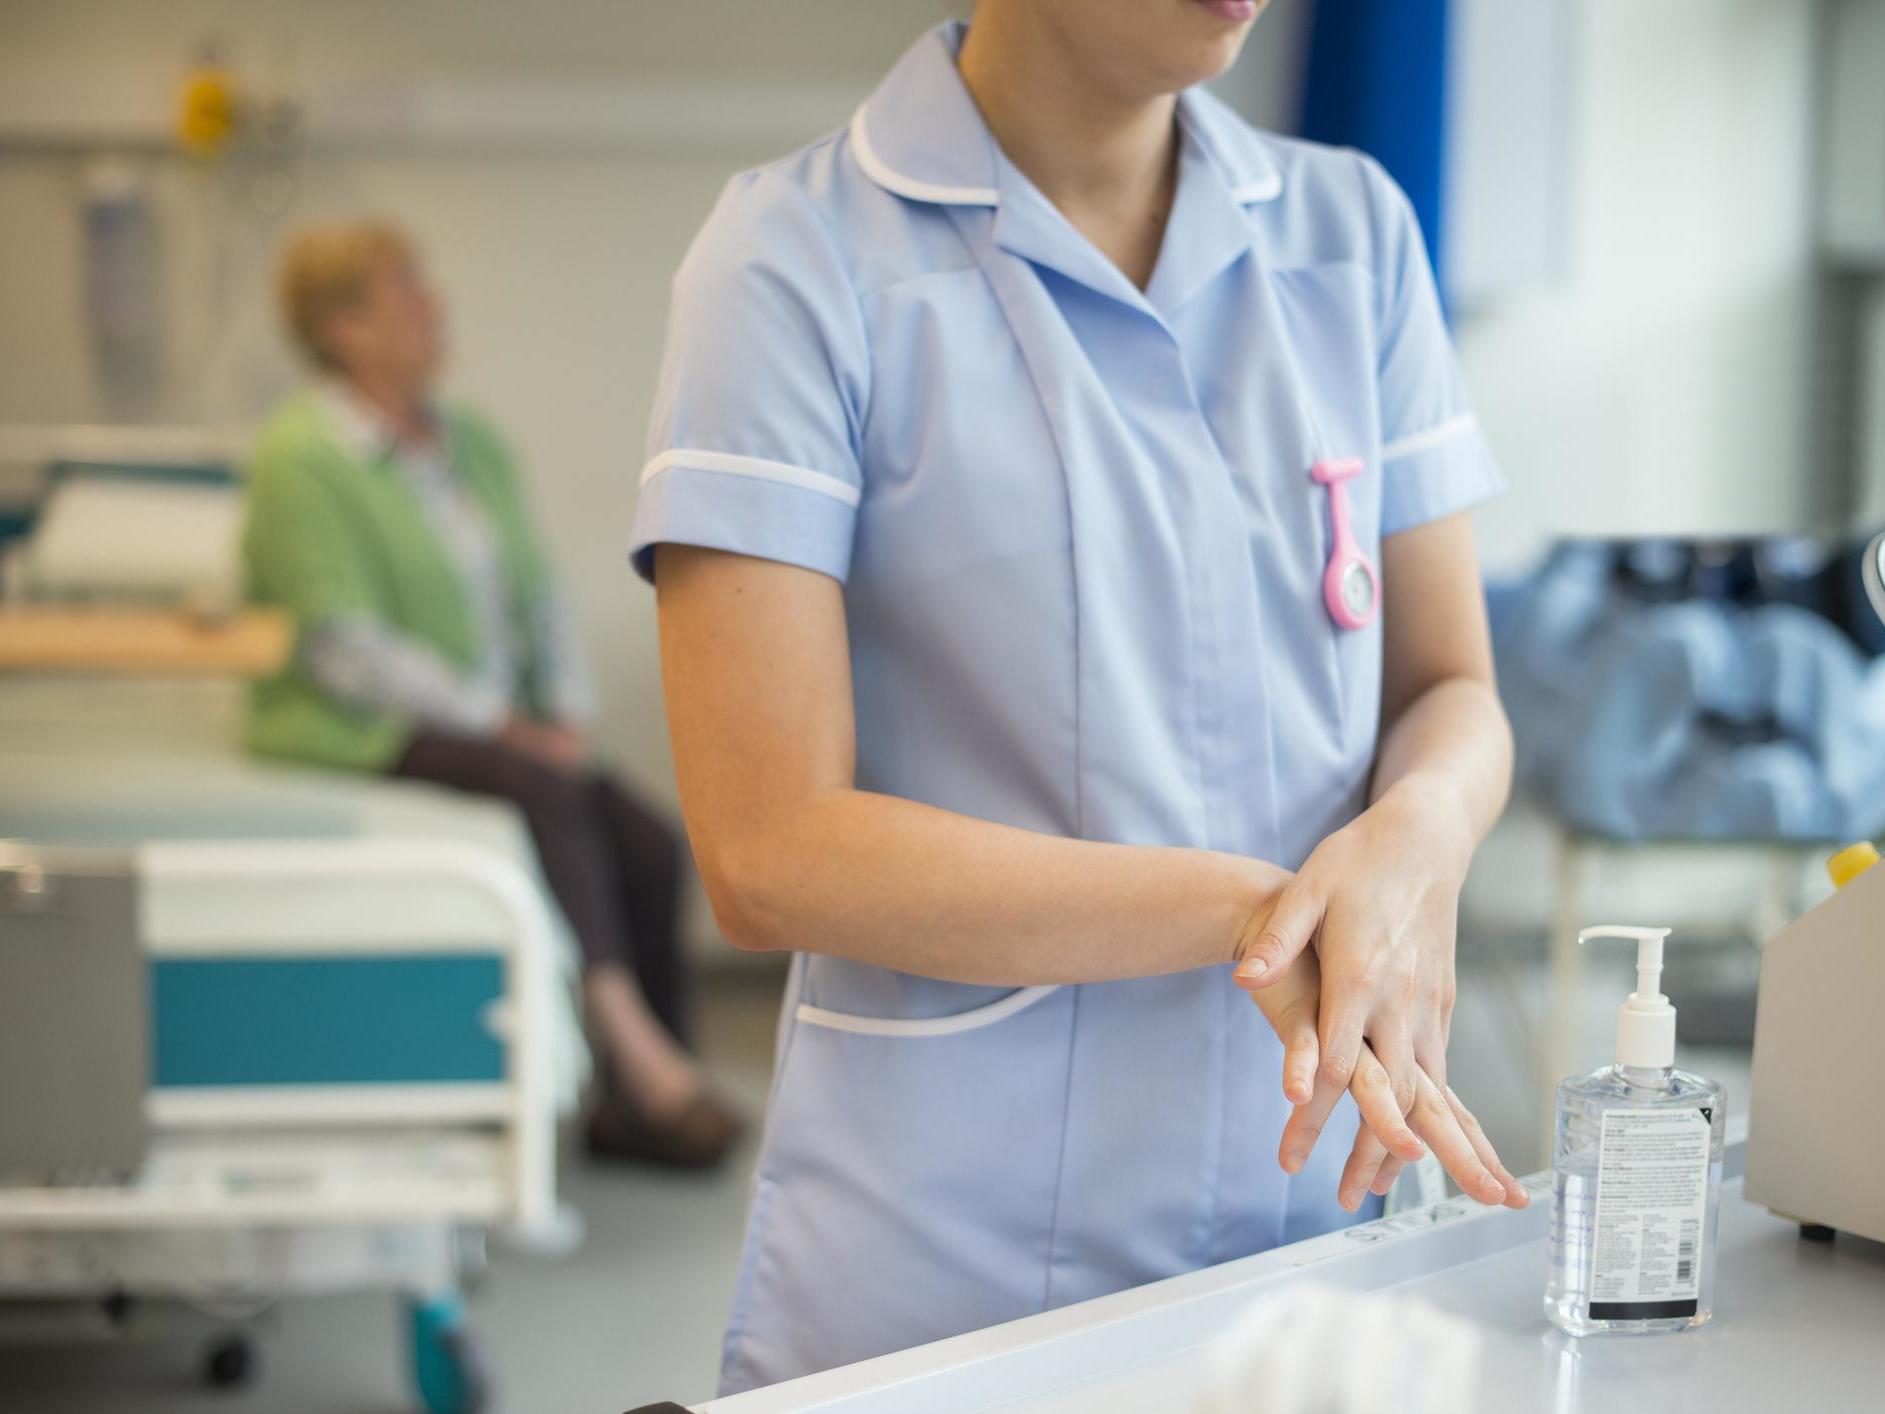 Nurse washes hands after hospital